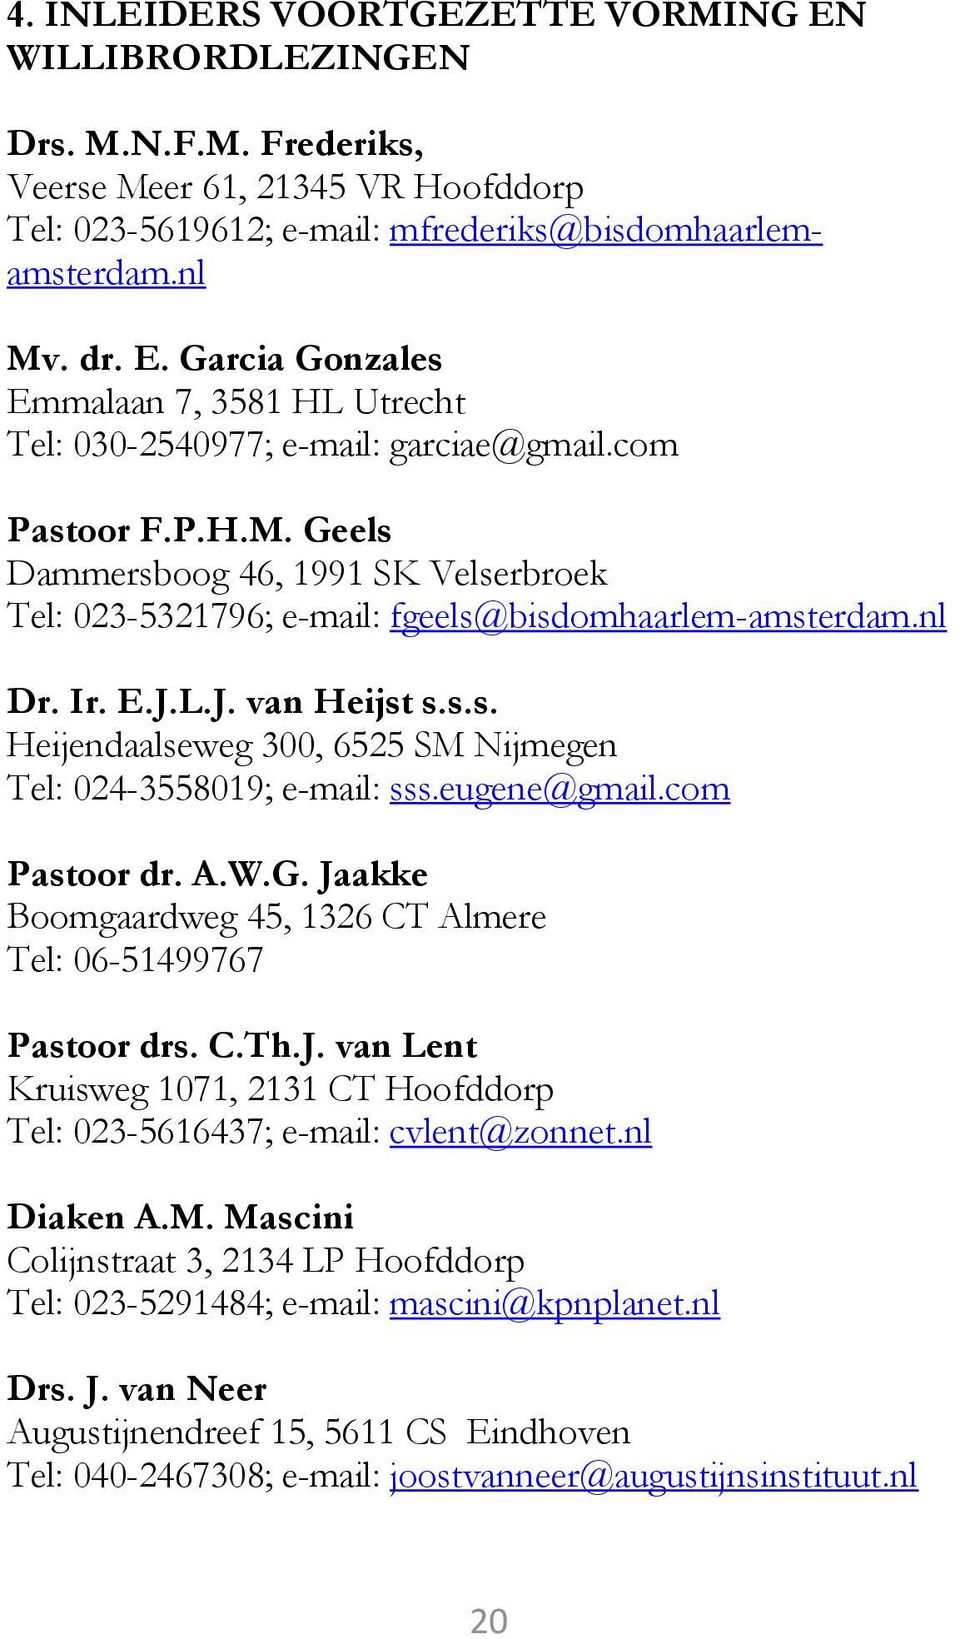 eugene@gmail.com Pastoor dr. A.W.G. Jaakke Boomgaardweg 45, 1326 CT Almere Tel: 06-51499767 Pastoor drs. C.Th.J. van Lent Kruisweg 1071, 2131 CT Hoofddorp Tel: 023-5616437; e-mail: cvlent@zonnet.